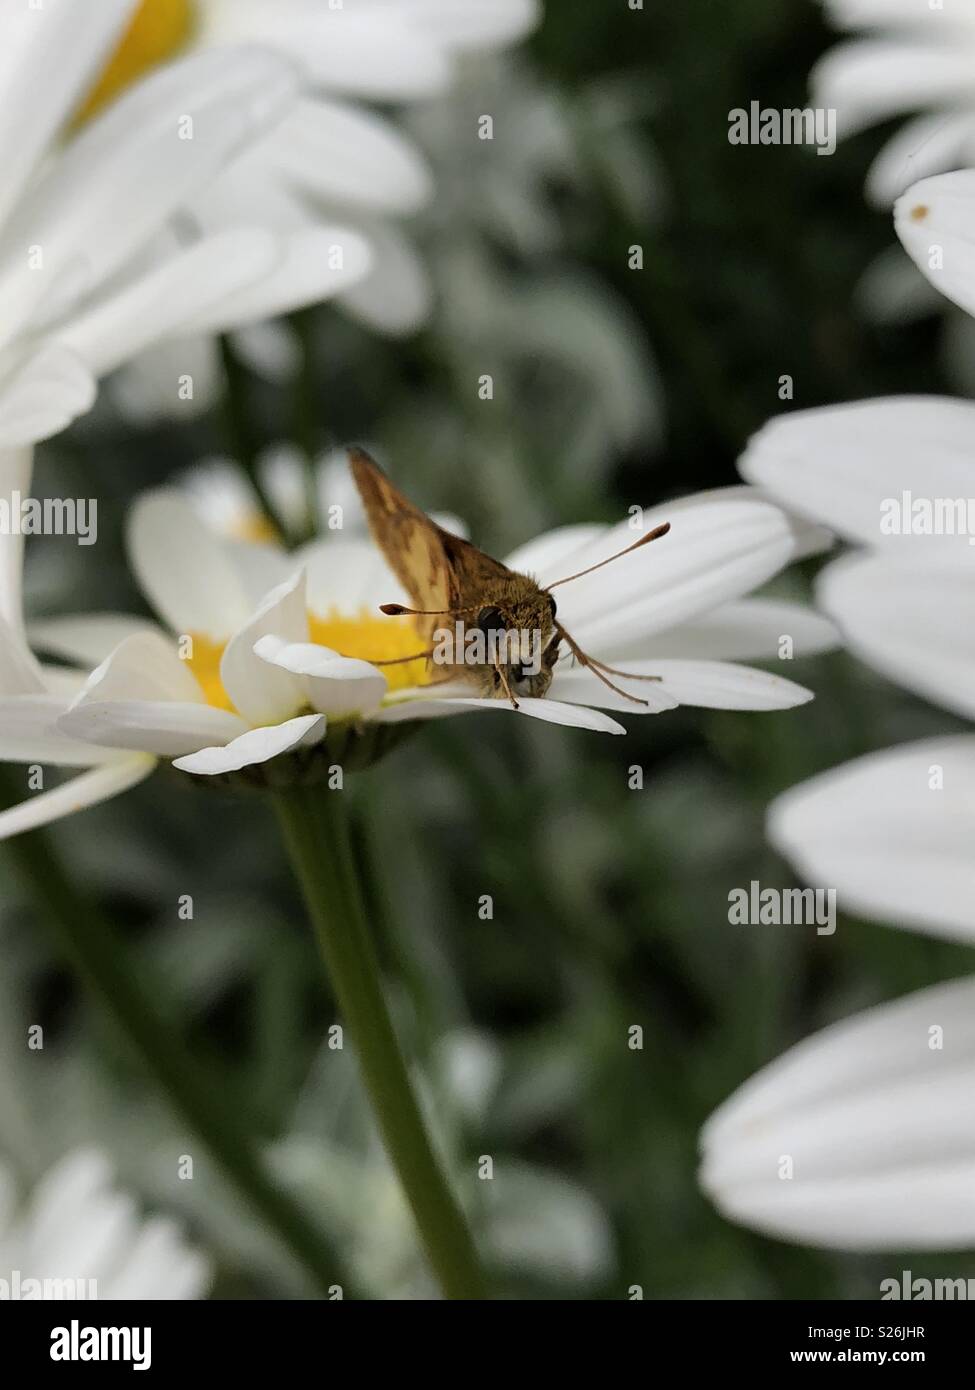 Tiny butterfly on white daisy Stock Photo